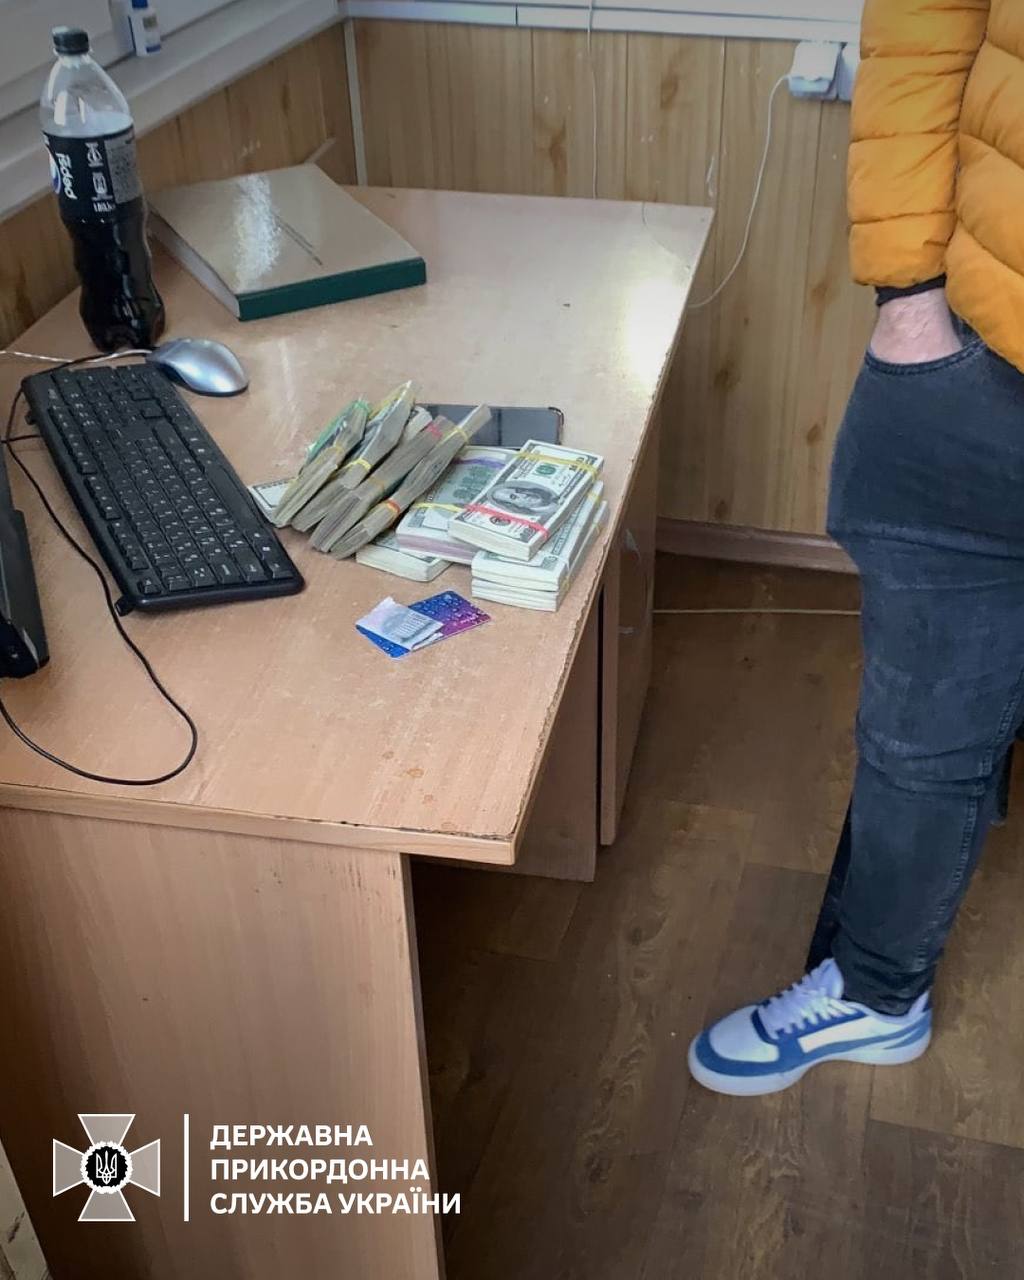 Два гражданина Молдовы пытались незаконно перевезти значительную сумму средств через ЧП «Старокозачее»